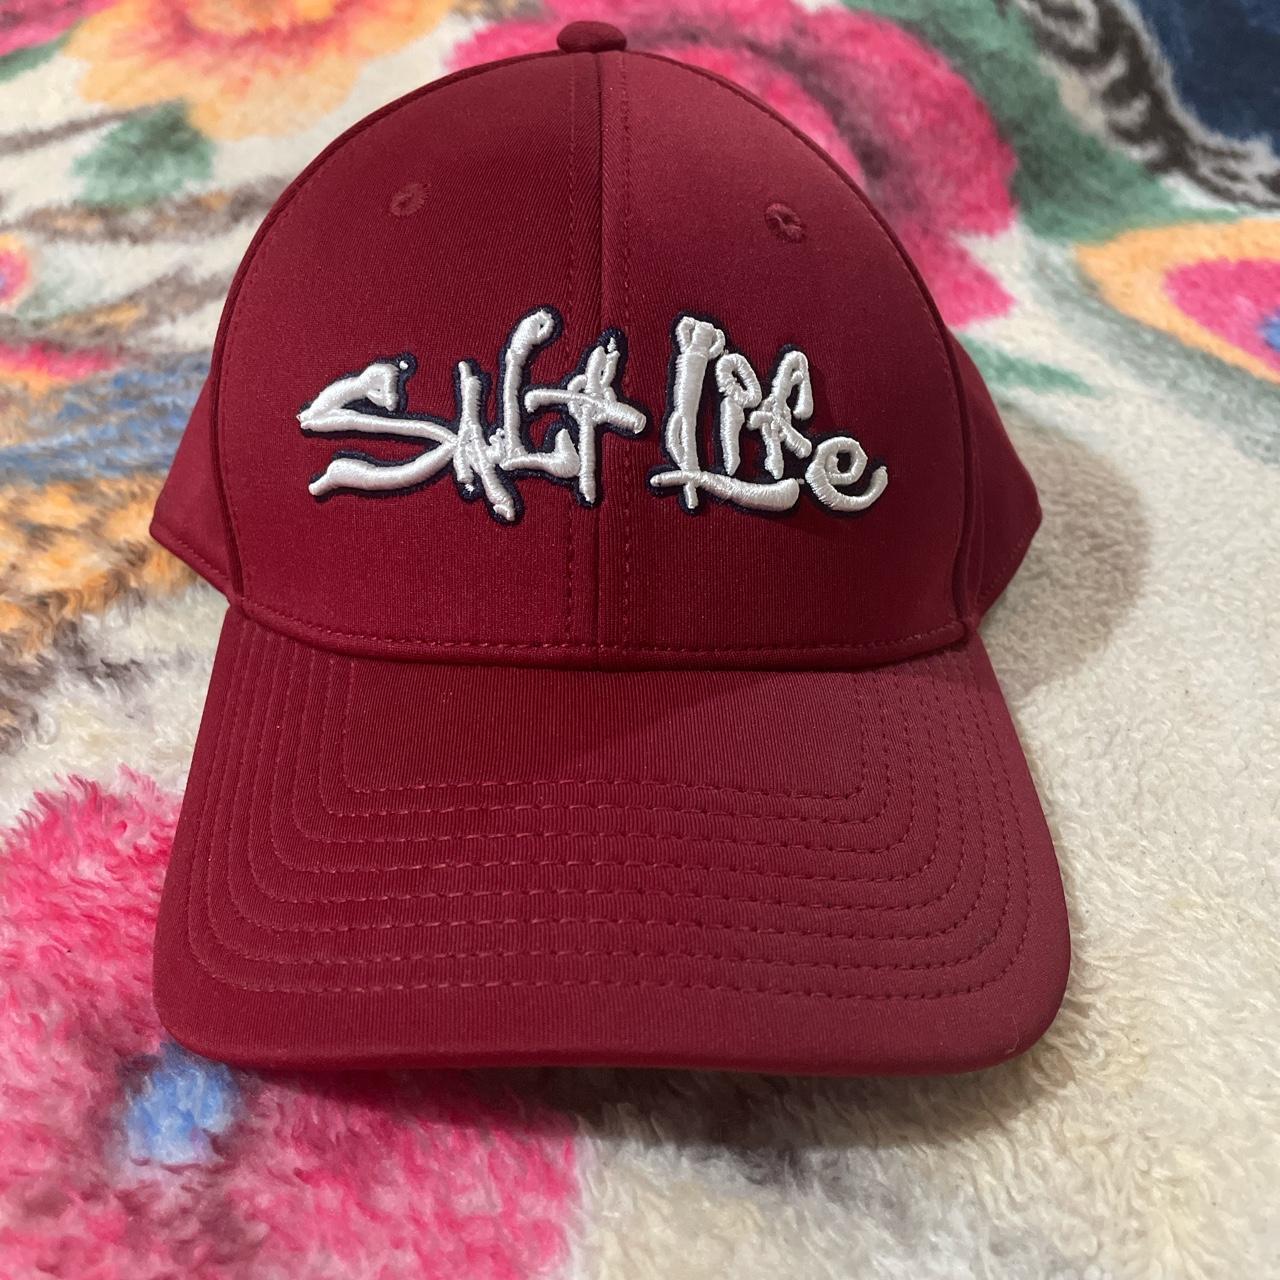 Salt life hat stain on side of hat reminds me me of - Depop